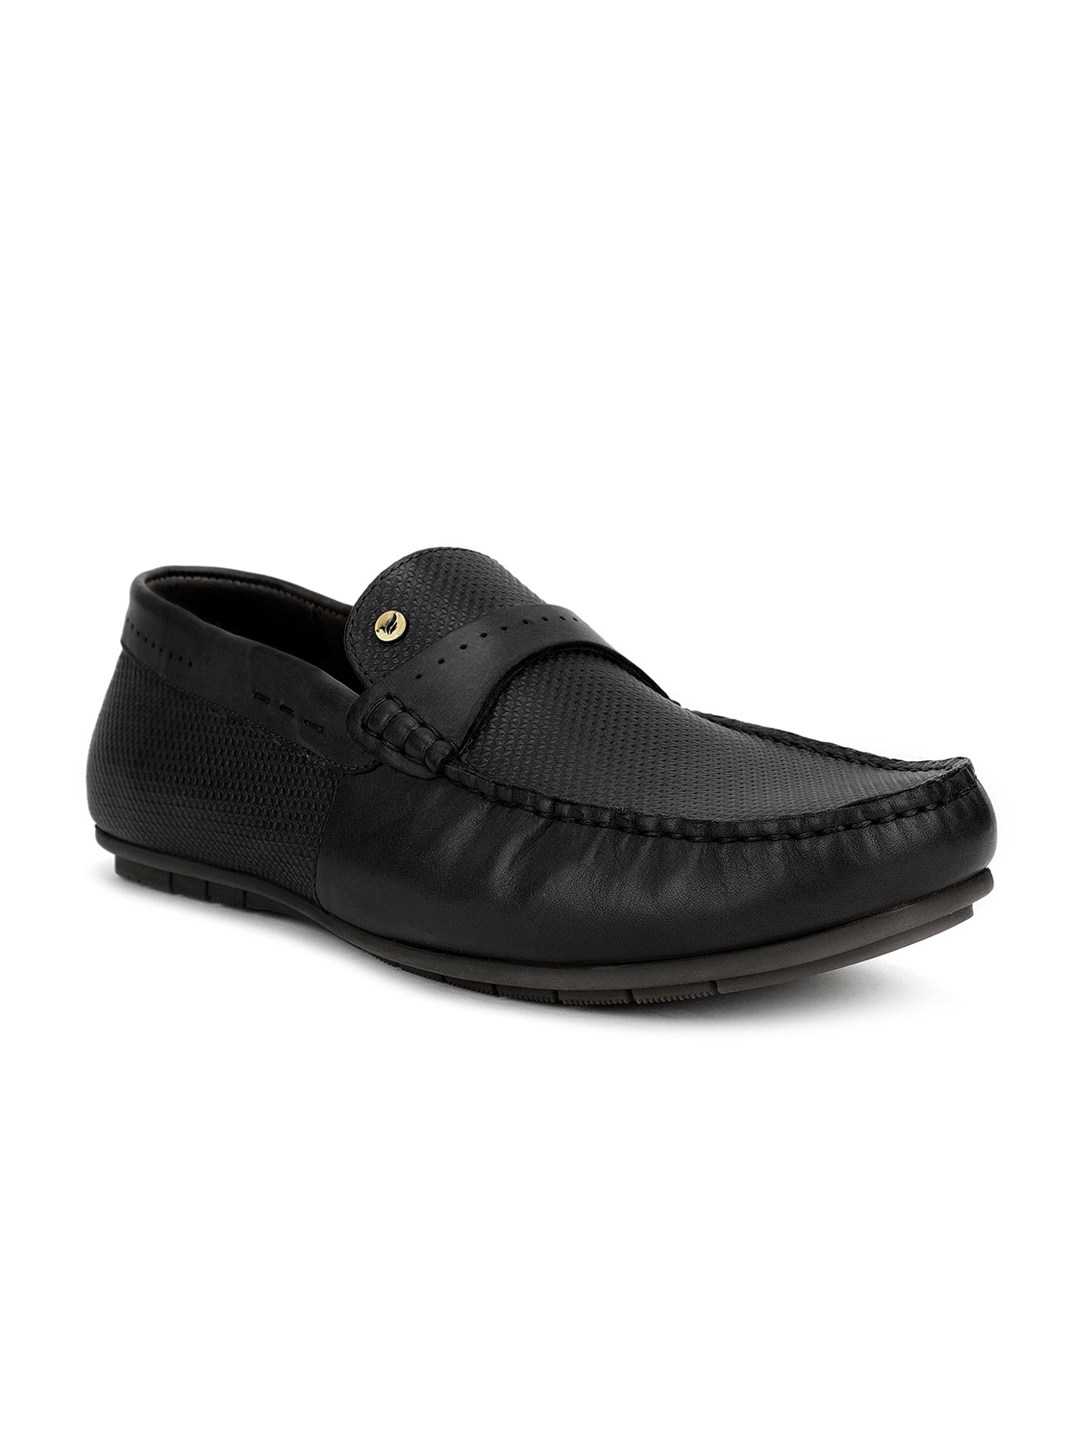 Buy Blackberrys Men Black Solid Leather Formal Slip Ons - Formal Shoes ...